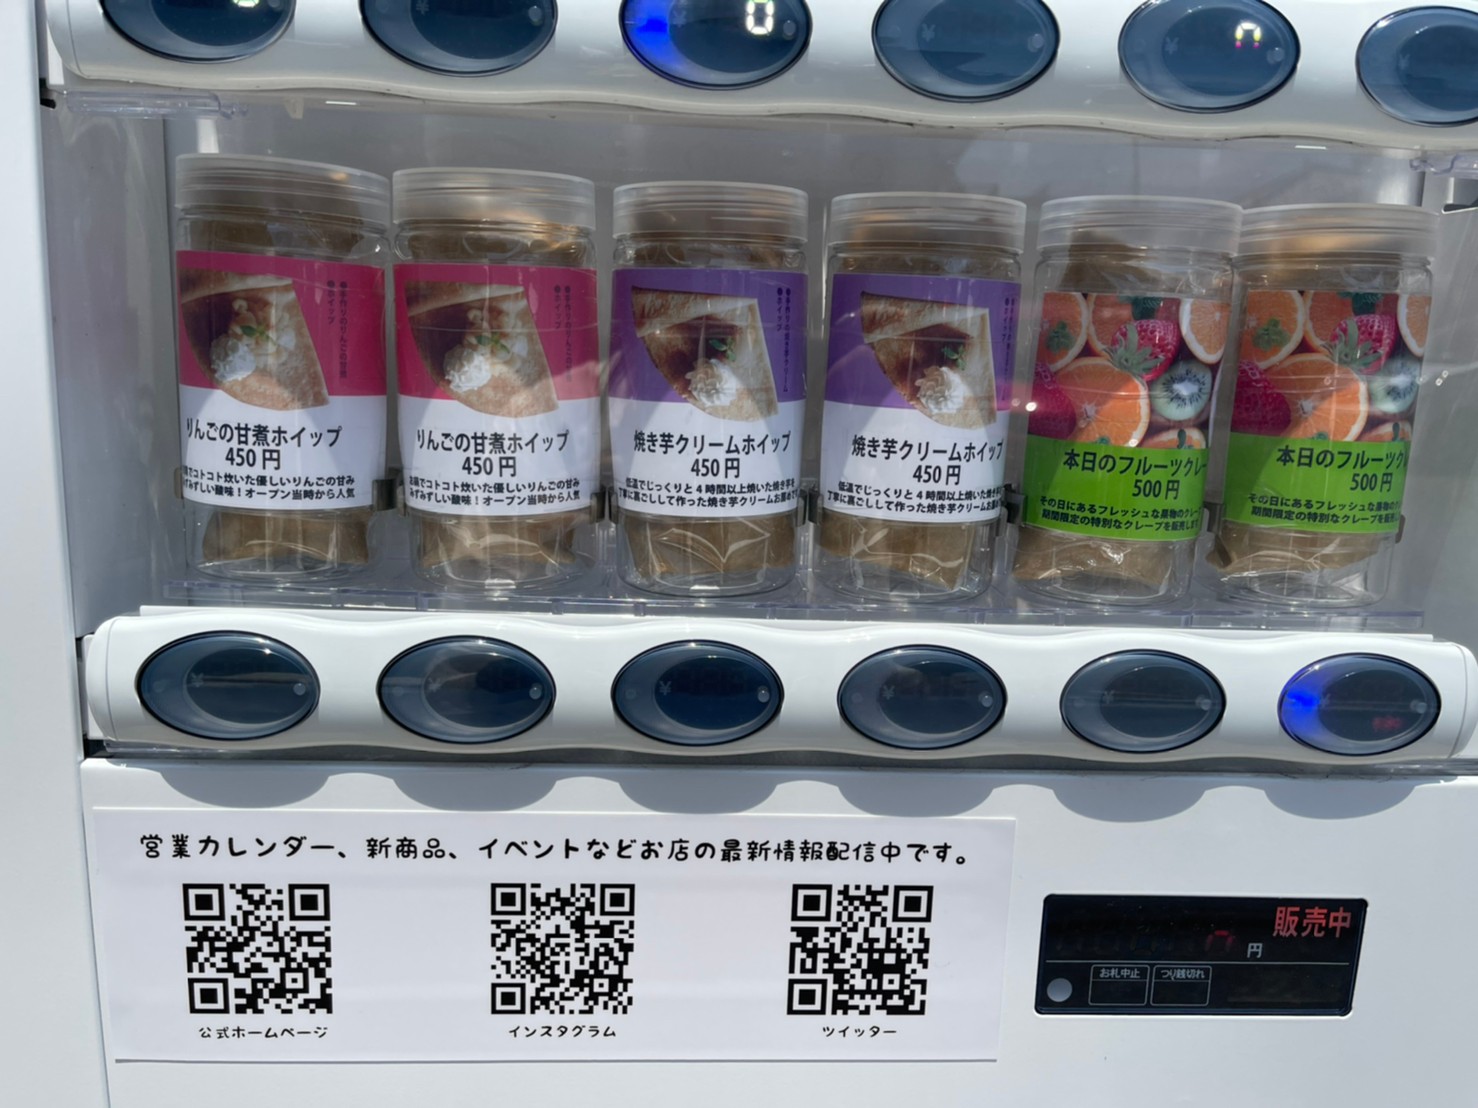 加古川 うみそらカフェ クレープの自動販売機が登場してる 実際に買ってみた 姫路の種